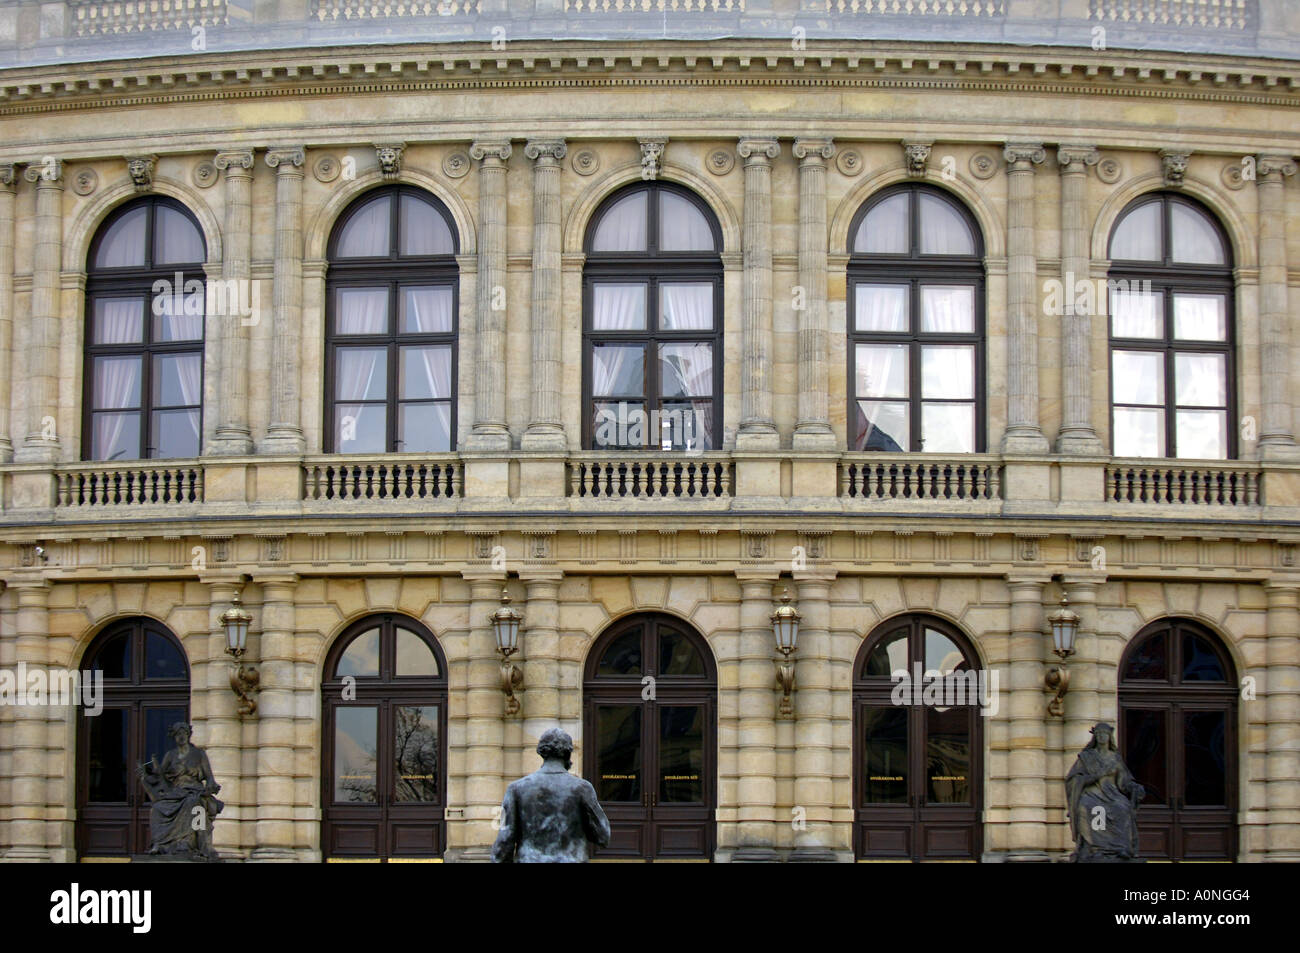 Antonin dvorak Konzert Halle Prag Praha Prag Reisen Tourismus Universität beeindruckende Architekturgebäude öffentlichen Auditorium bui Stockfoto